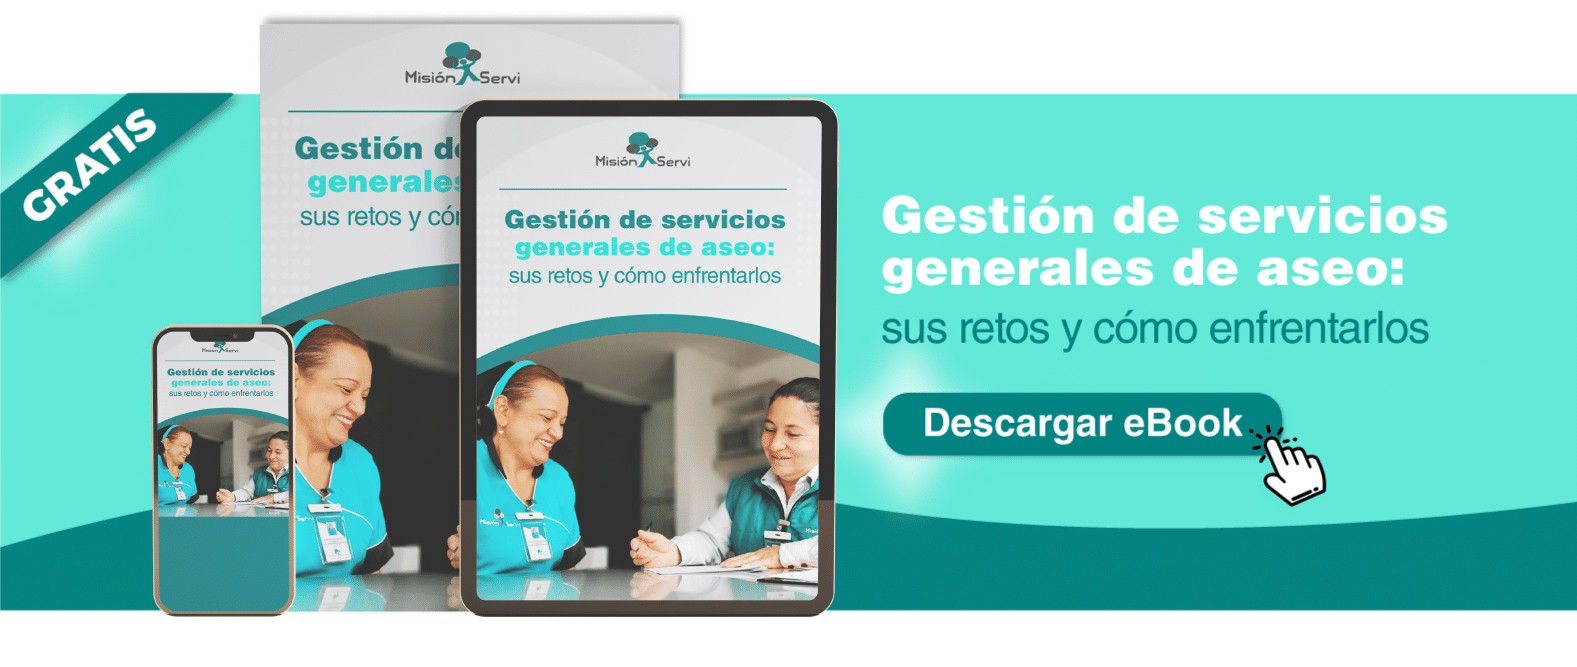 Descarga GRATIS el ebook de gestion de servicios generales - Misión Servir